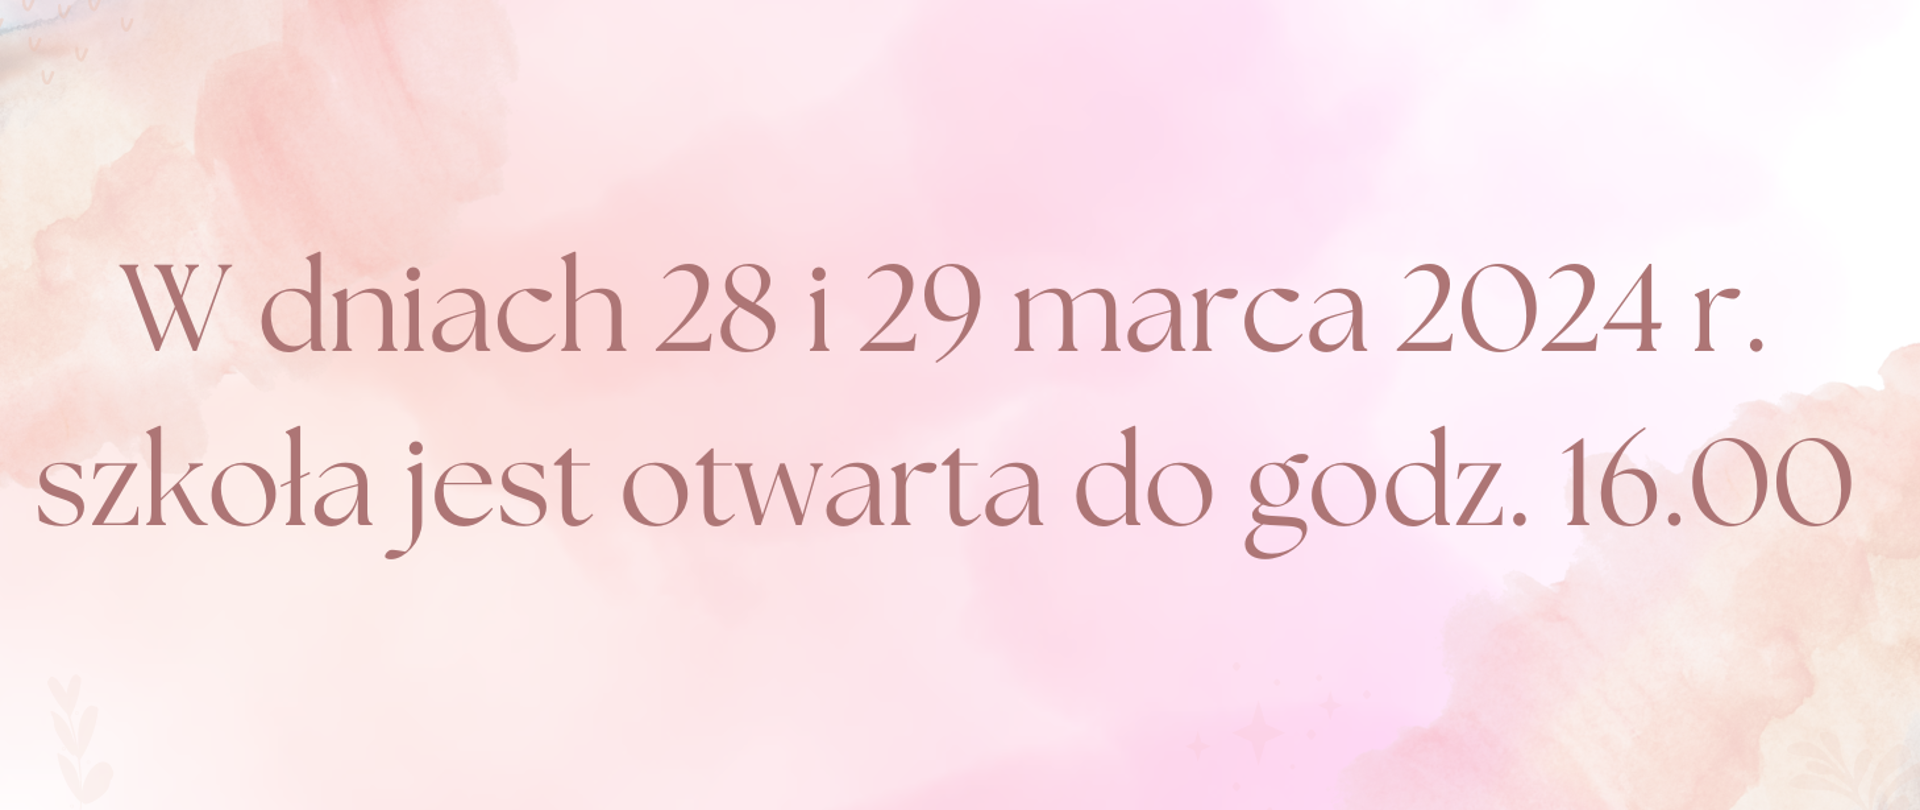 Baner z napisem: W dniach 28 i 29 marca 2024 r. szkoła jest otwarta do godz. 16.00